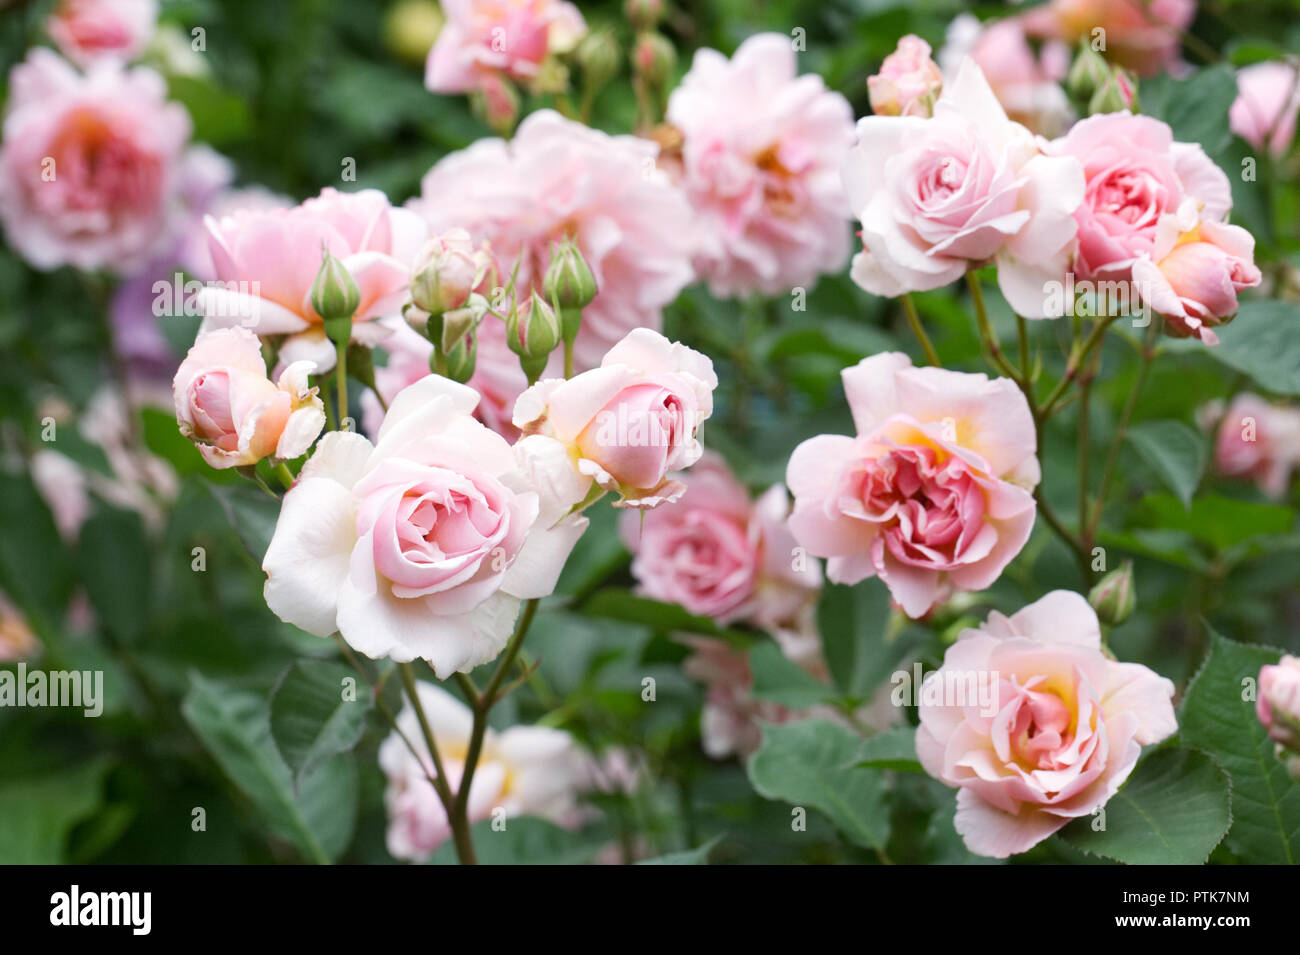 Rosa 'Felicia'. Shrub rose in an English garden. Stock Photo